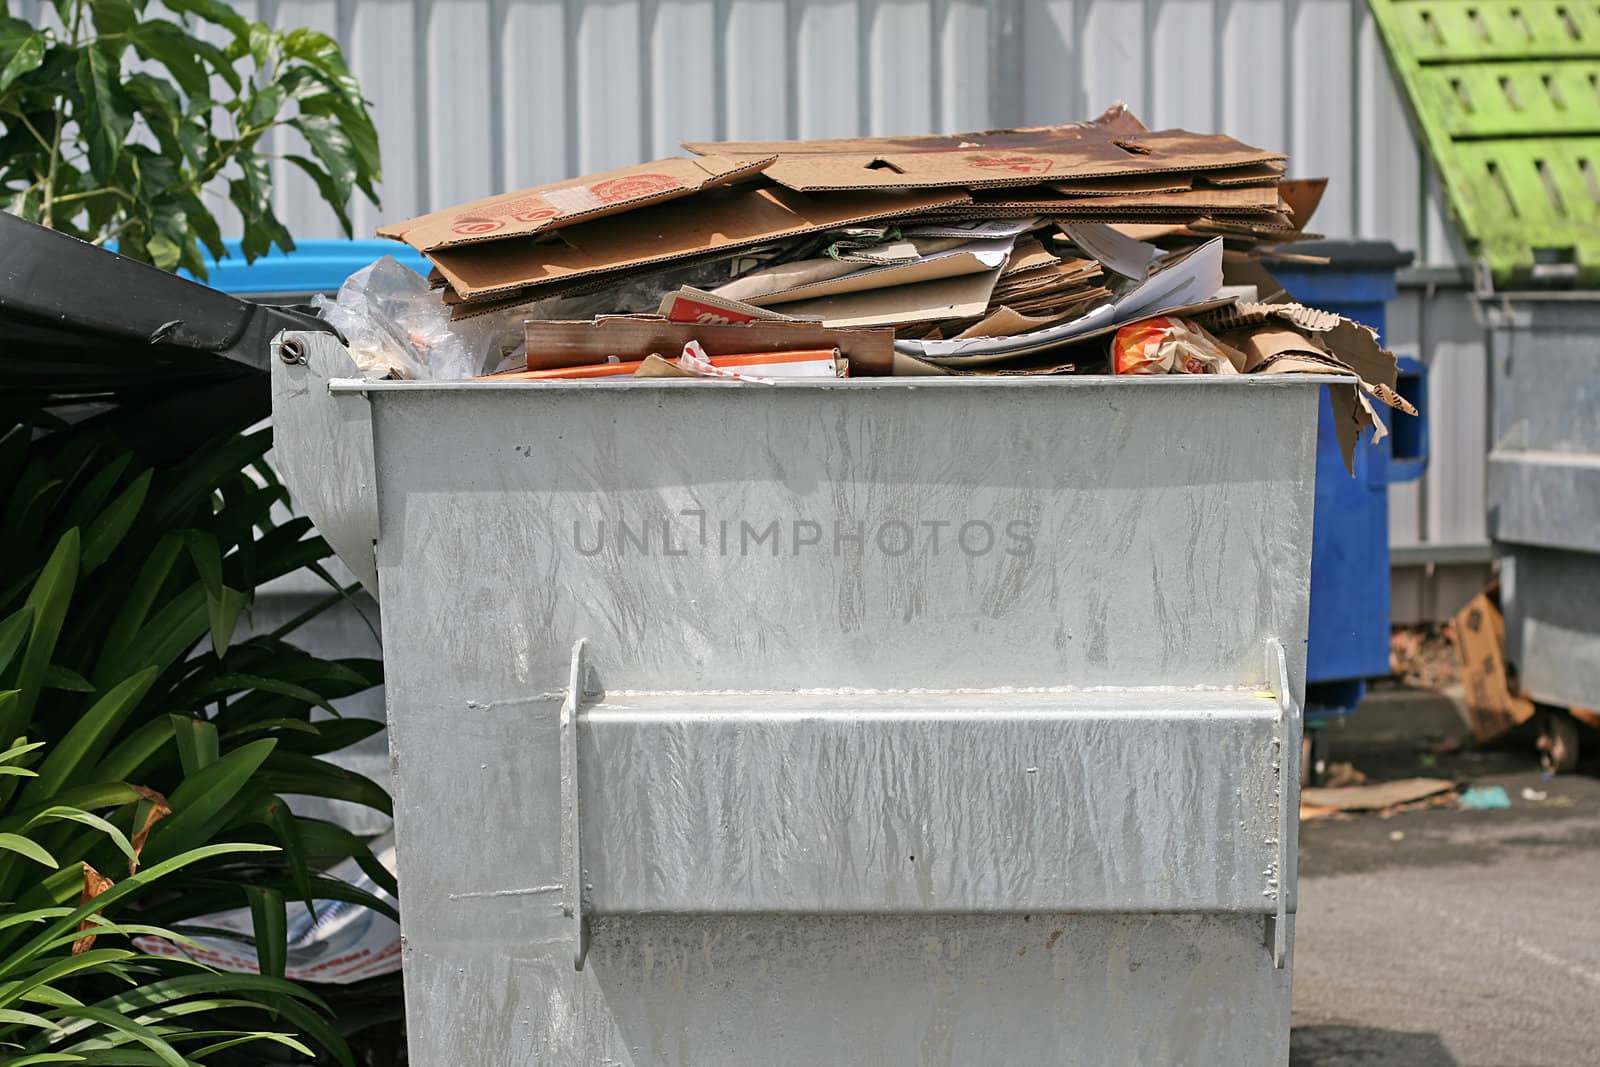 Dumpster by Joyce